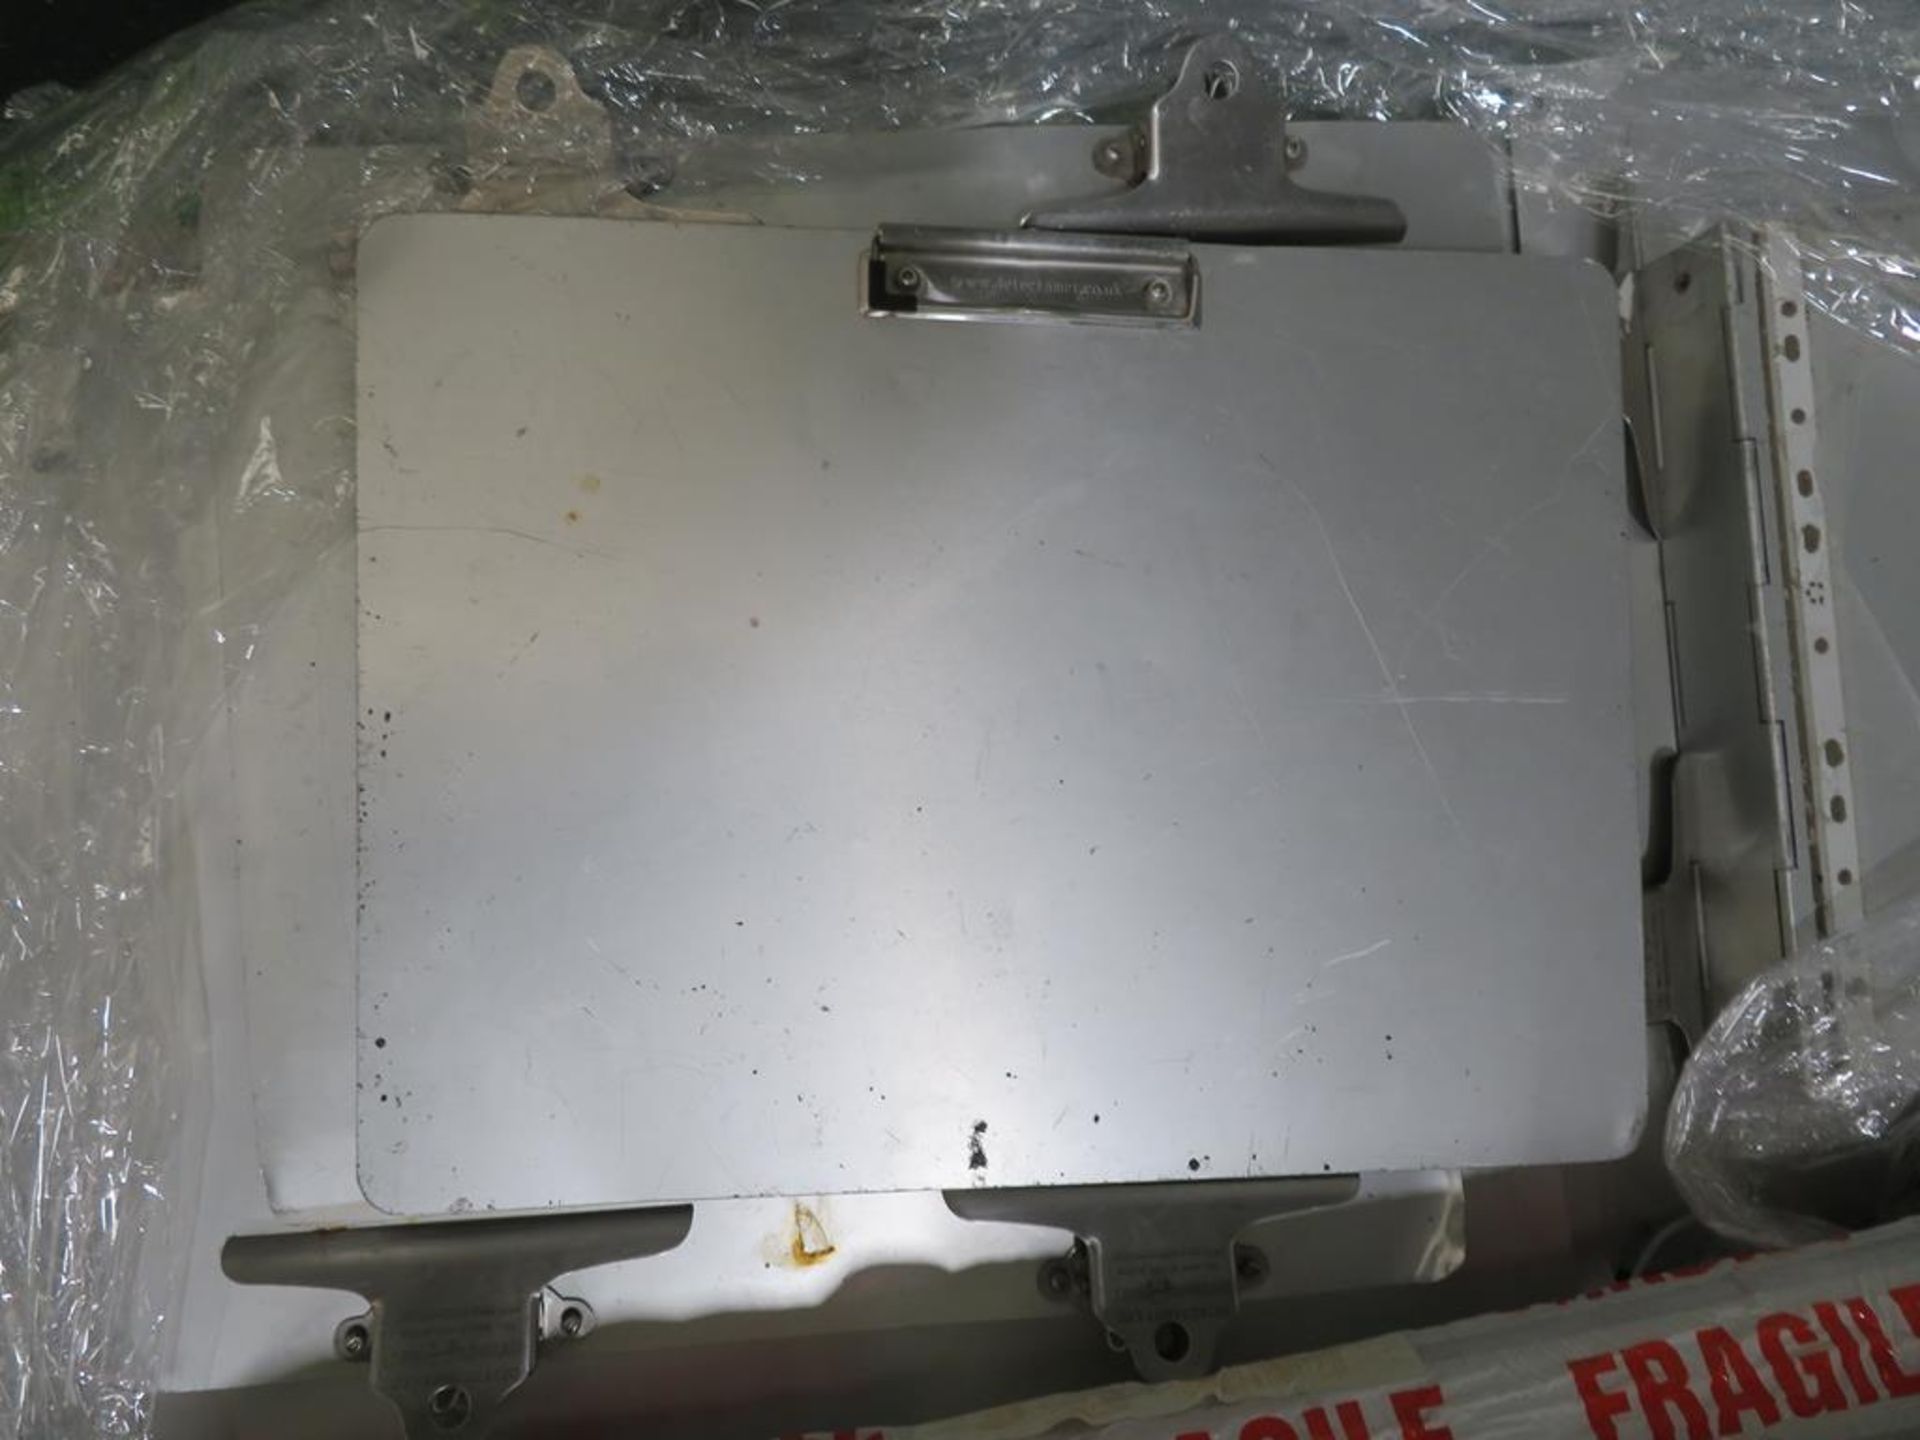 Detectamet Ltd Aluminium Clip Boards, Syspal Dispenser etc. - Image 2 of 2